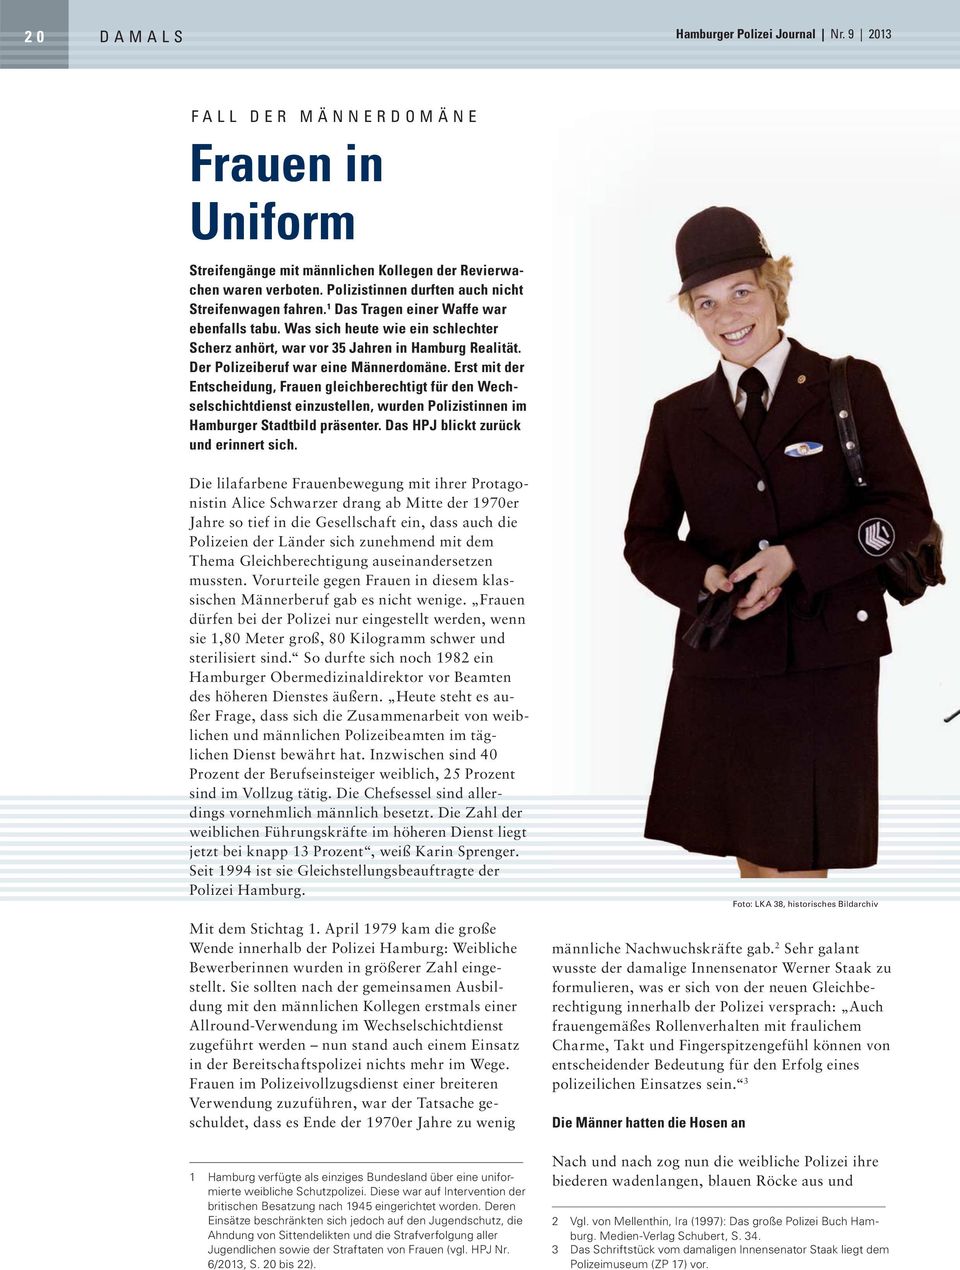 Der Polizeiberuf war eine Männerdomäne. Erst mit der Entscheidung, Frauen gleichberechtigt für den Wechselschichtdienst einzustellen, wurden Polizistinnen im Hamburger Stadtbild präsenter.